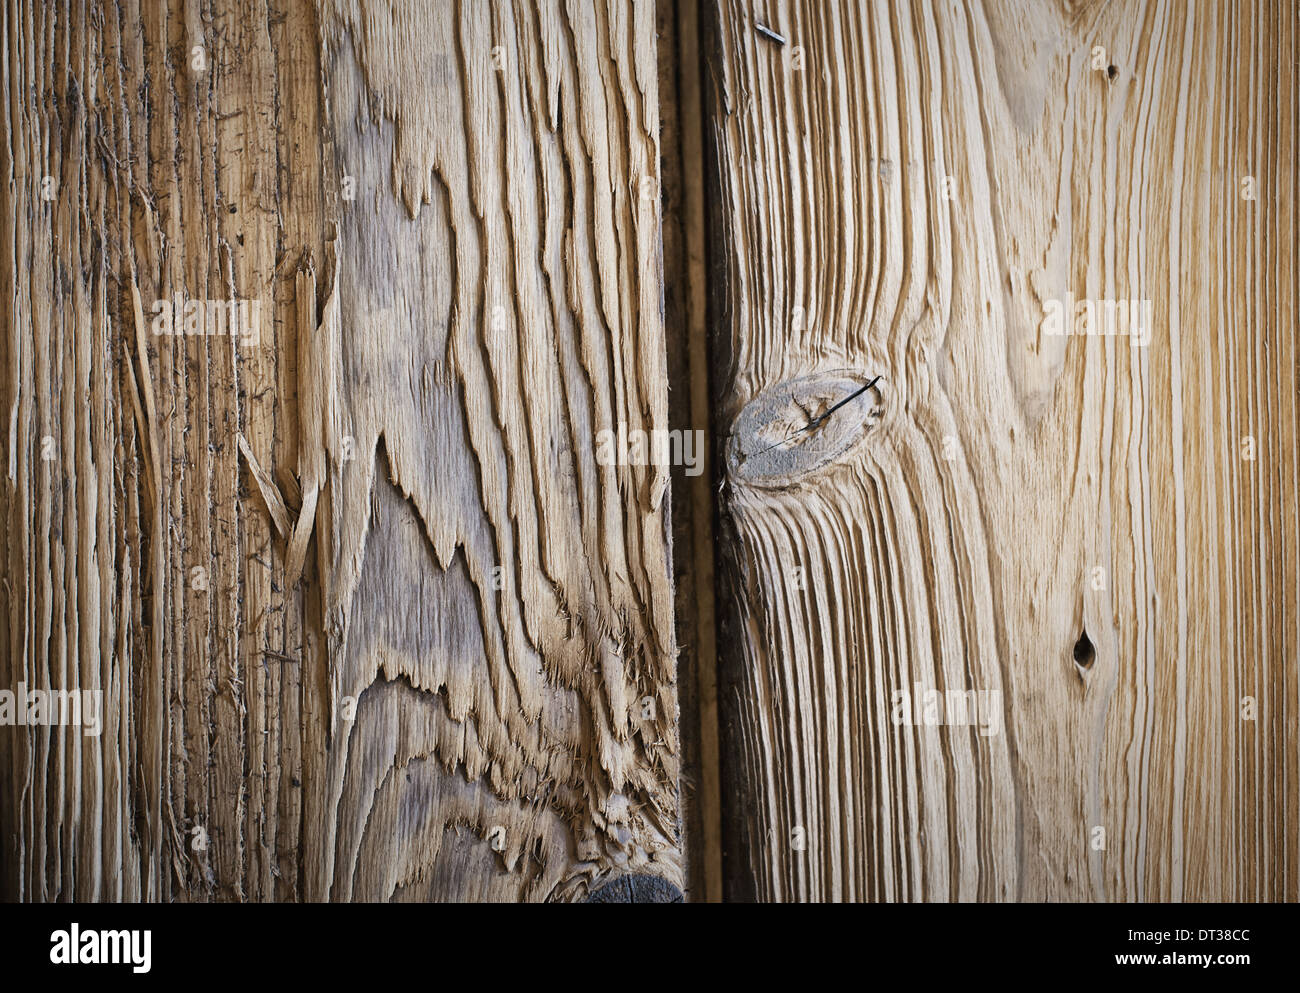 Atelier de bois d'une terre. Close up de deux planches de bois, avec des noeuds et du grain du bois. Banque D'Images